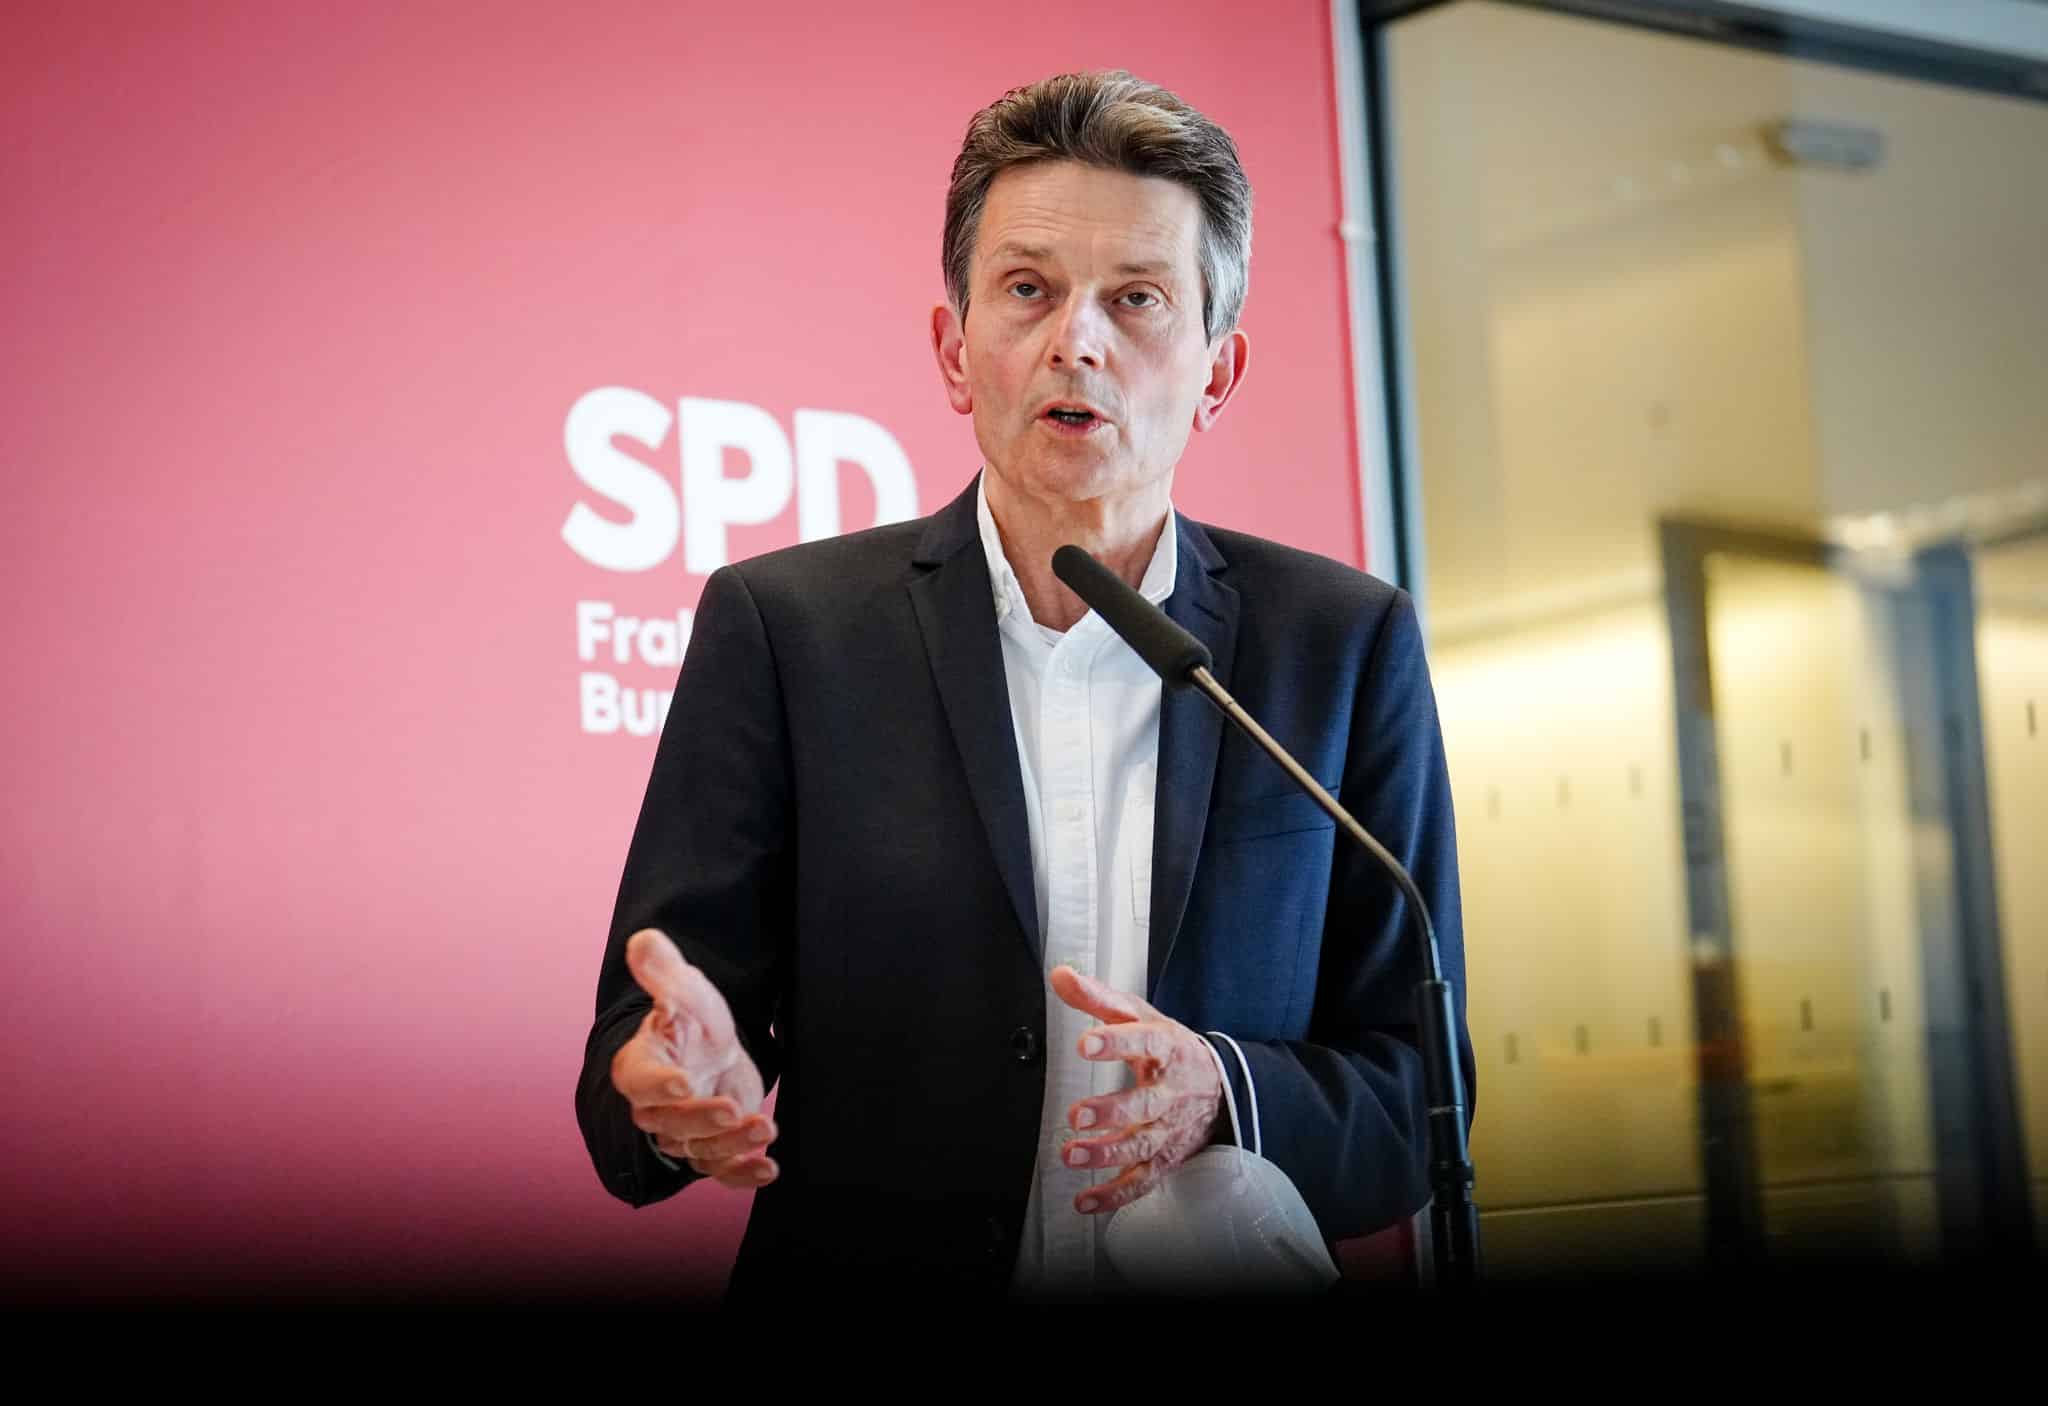 Preise steigen weiter: SPD-Fraktionschef kündigt weitere Entlastungen an